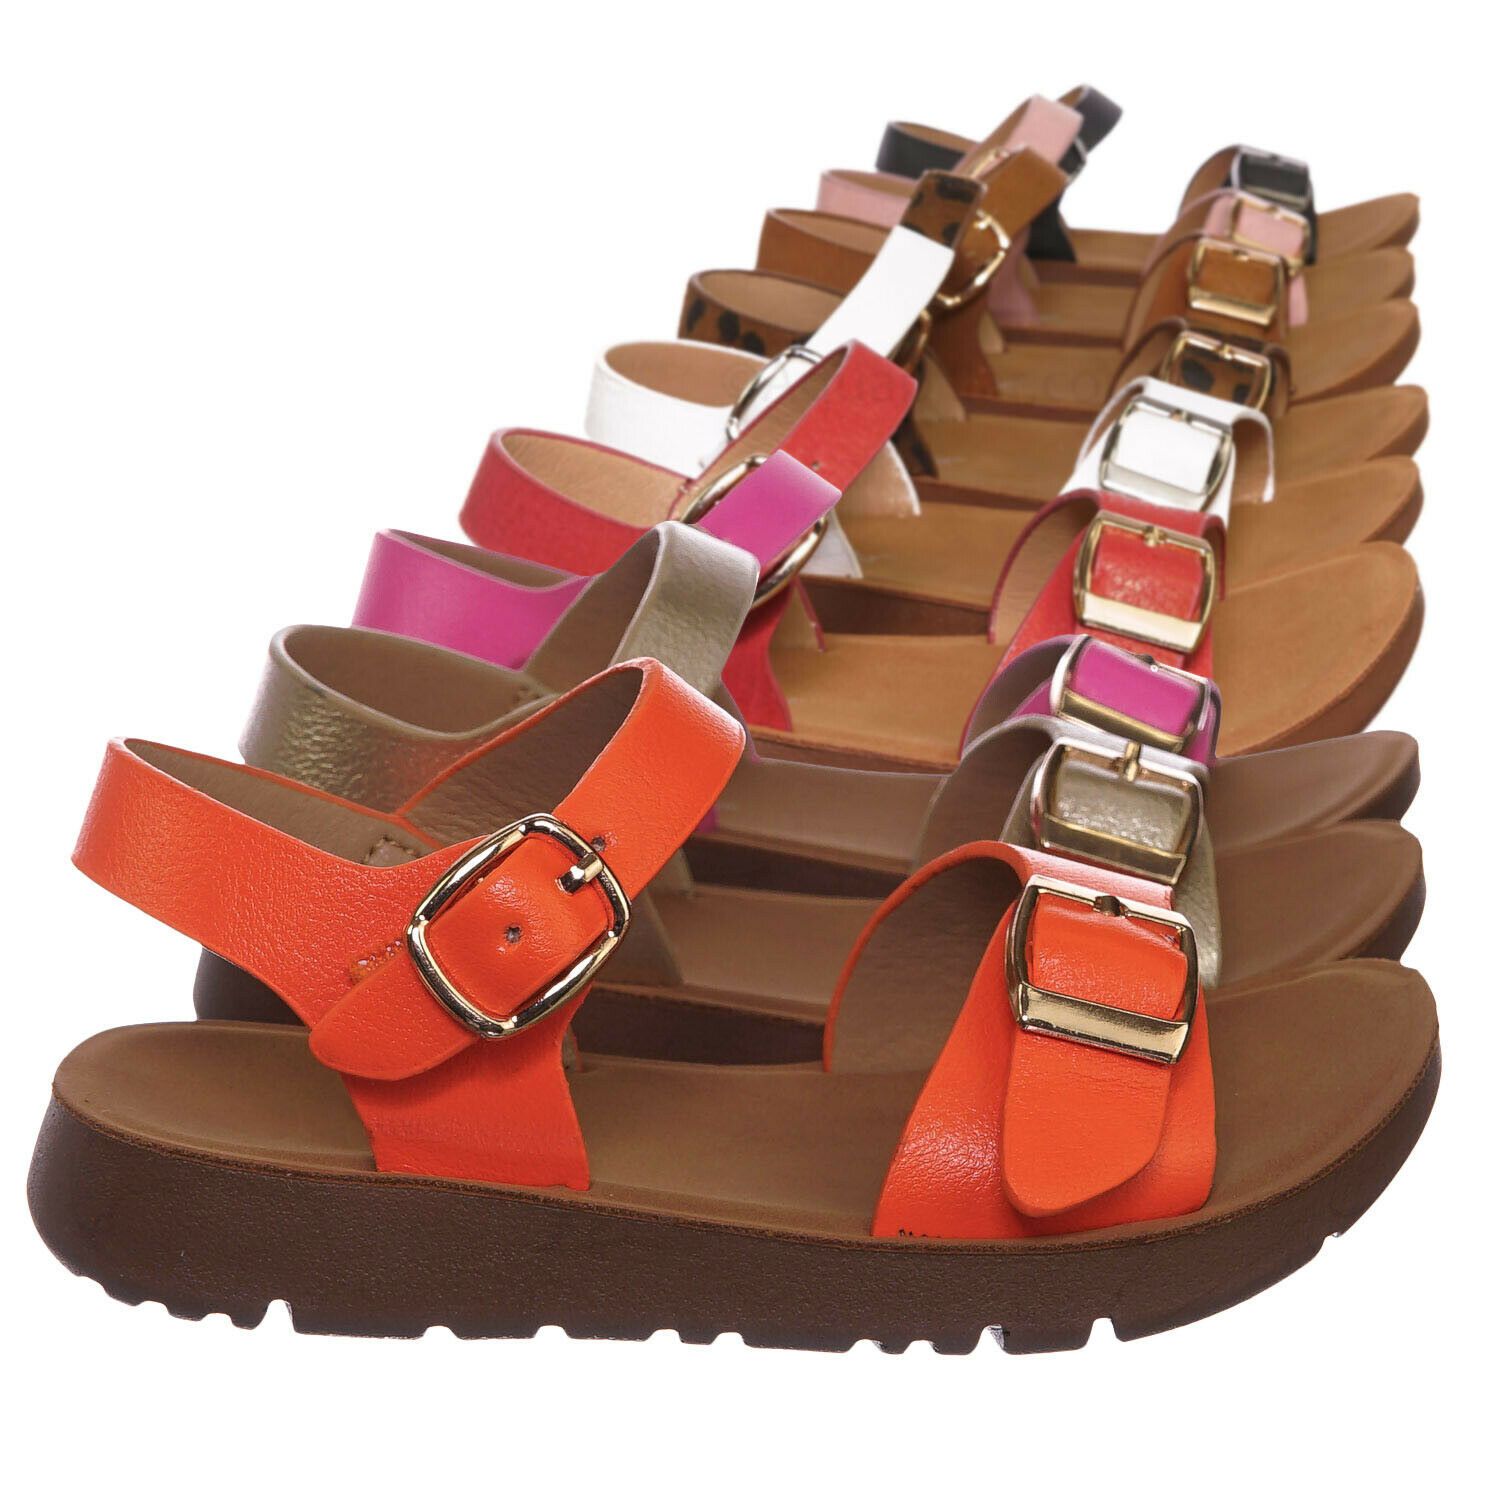 Reform9k Girl Comfort Flat Sandal -Children Little Kid Size Open Toe Summer Shoe